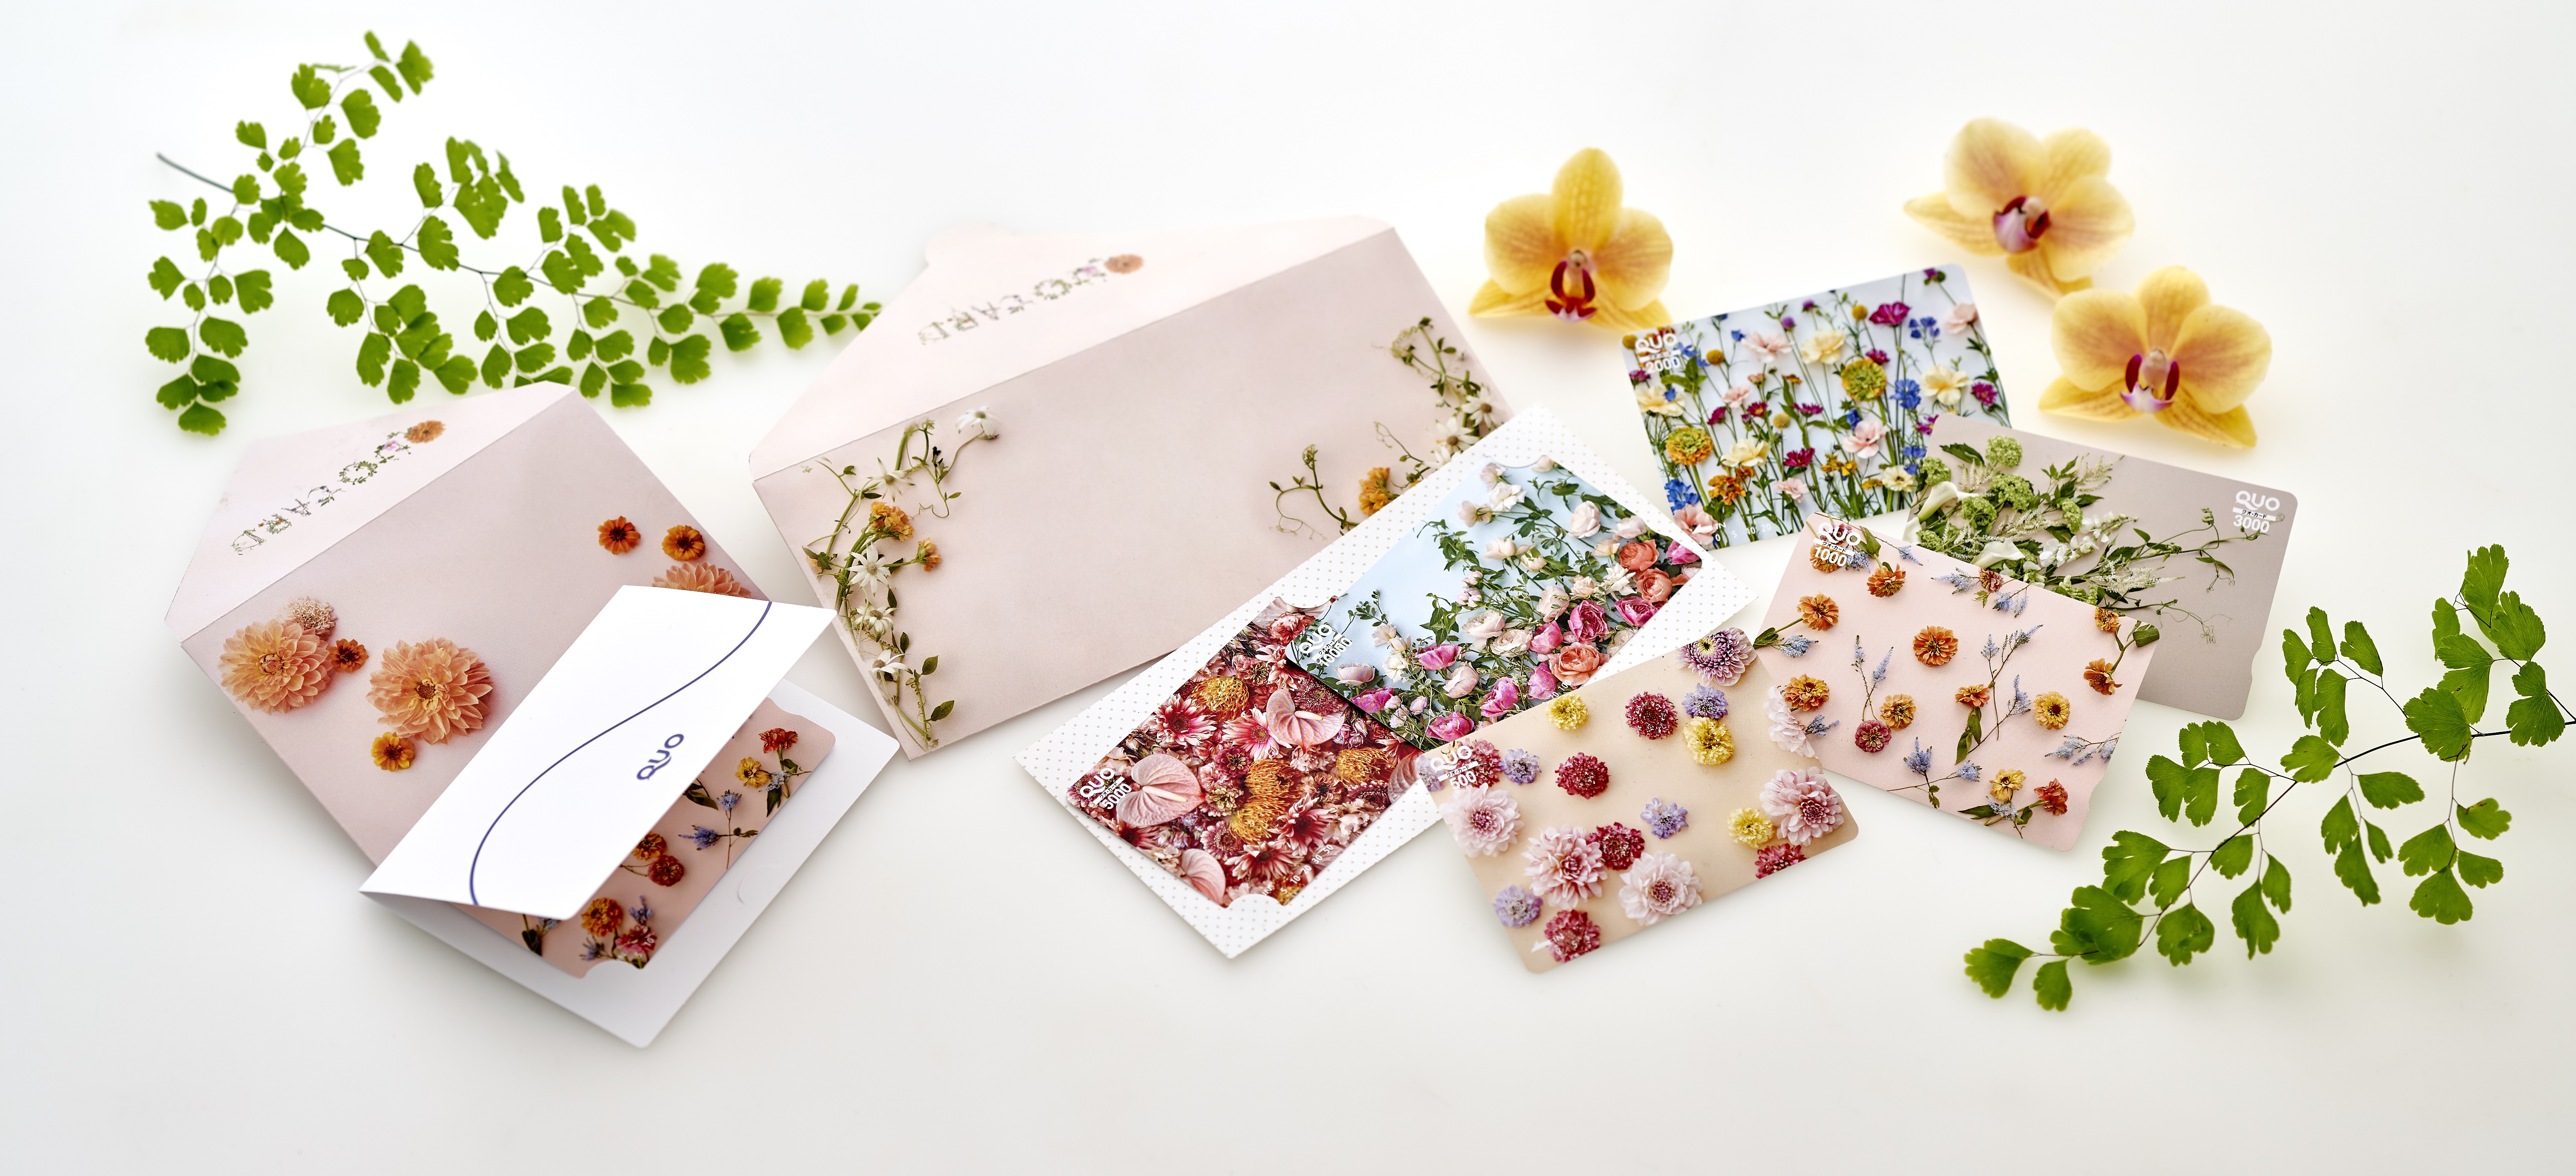 日比谷花壇 Quoカード 大切な方に贈る花束のようなギフト をコンセプトにしたquoカード カードケース新発売 株式会社クオカードのプレスリリース